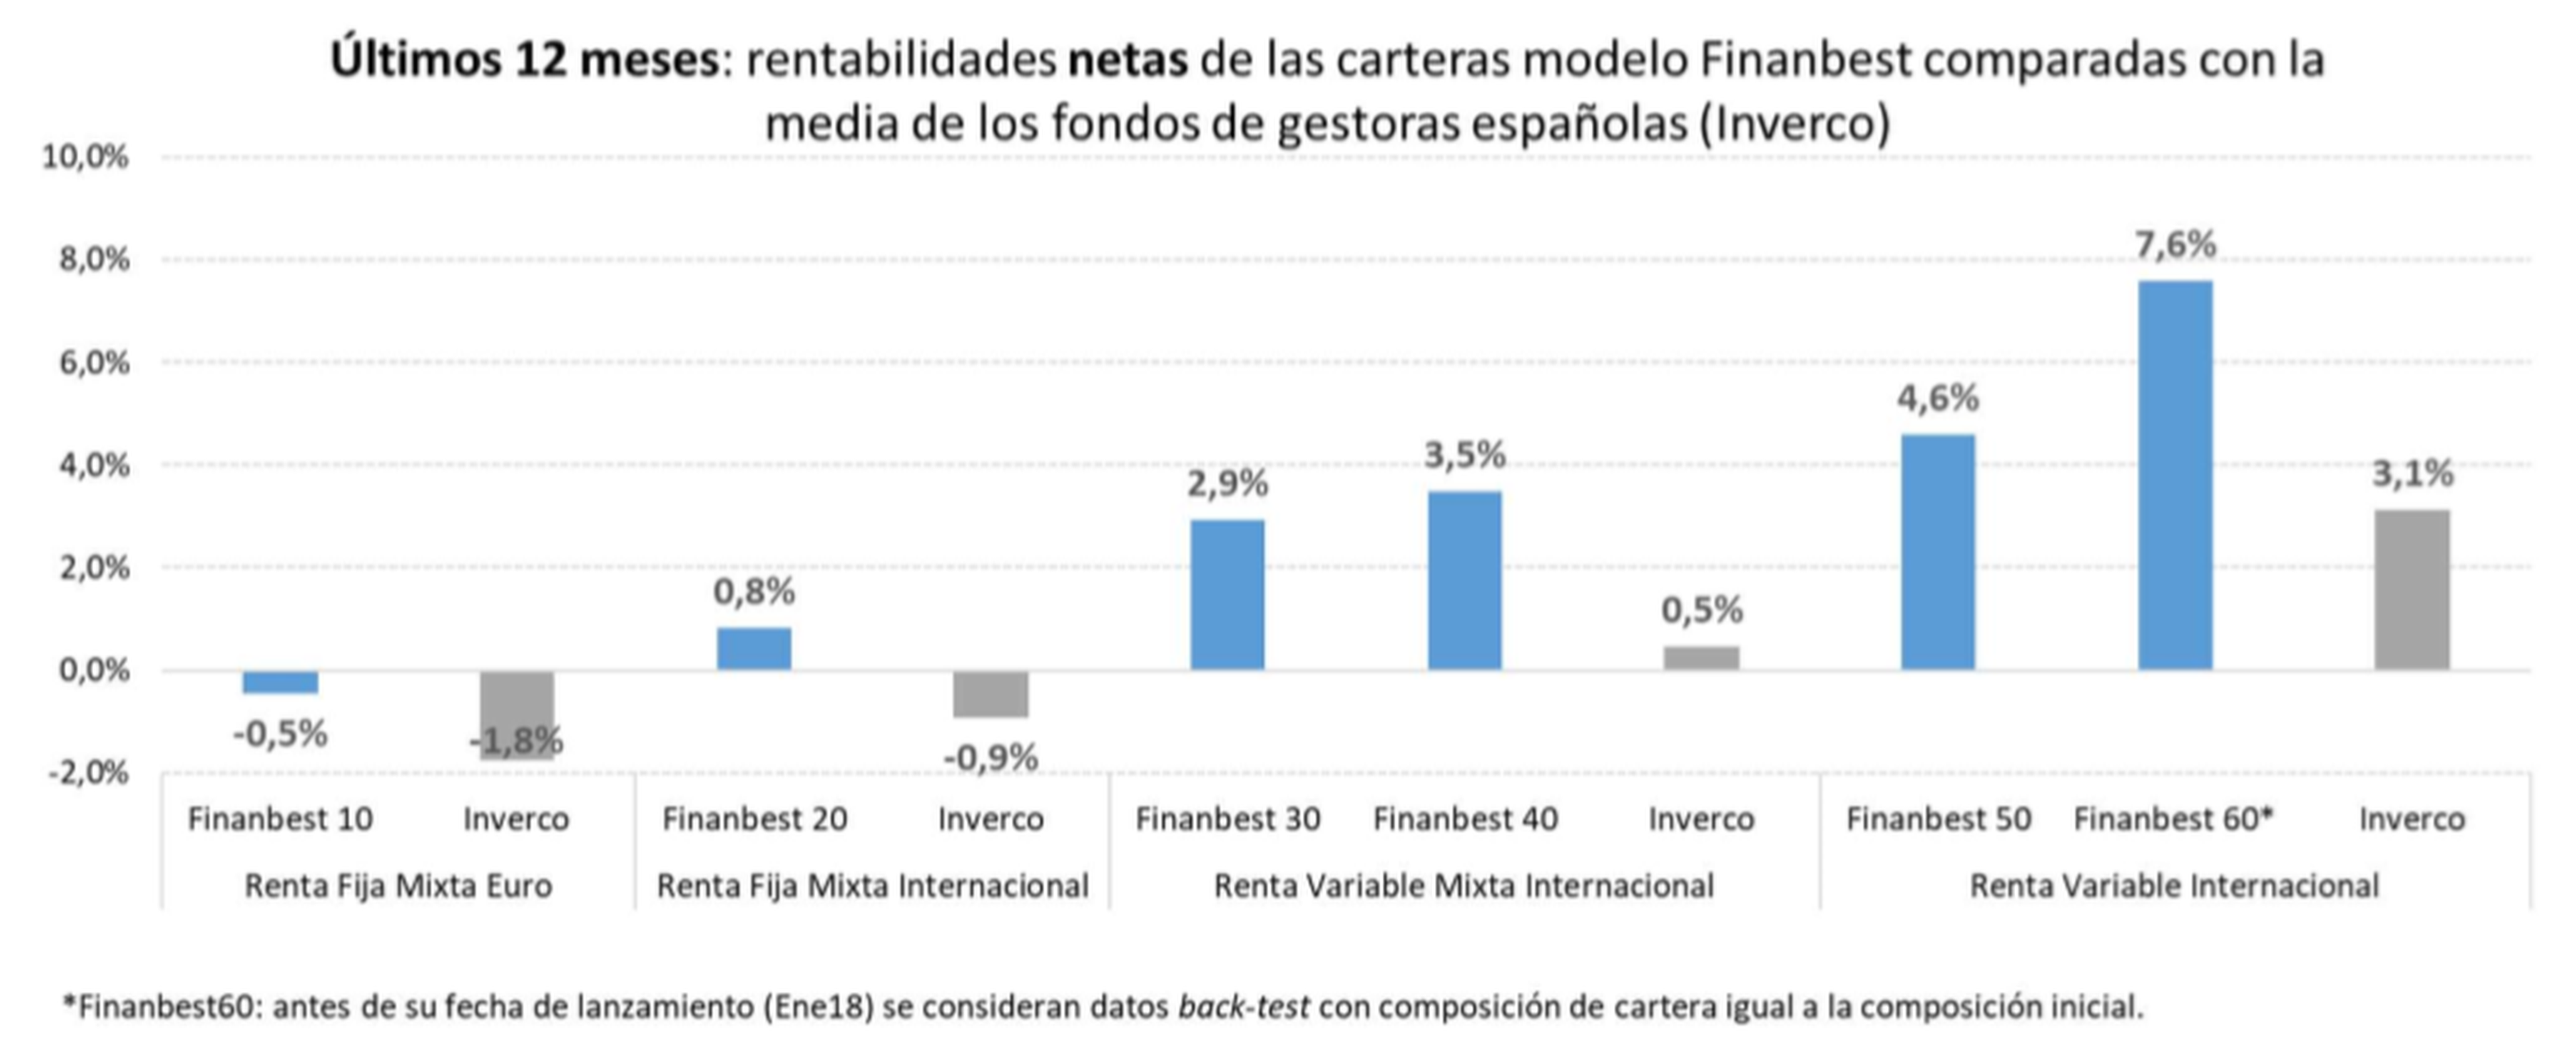 Rentabilidad de las carteras modelo de Finanbest